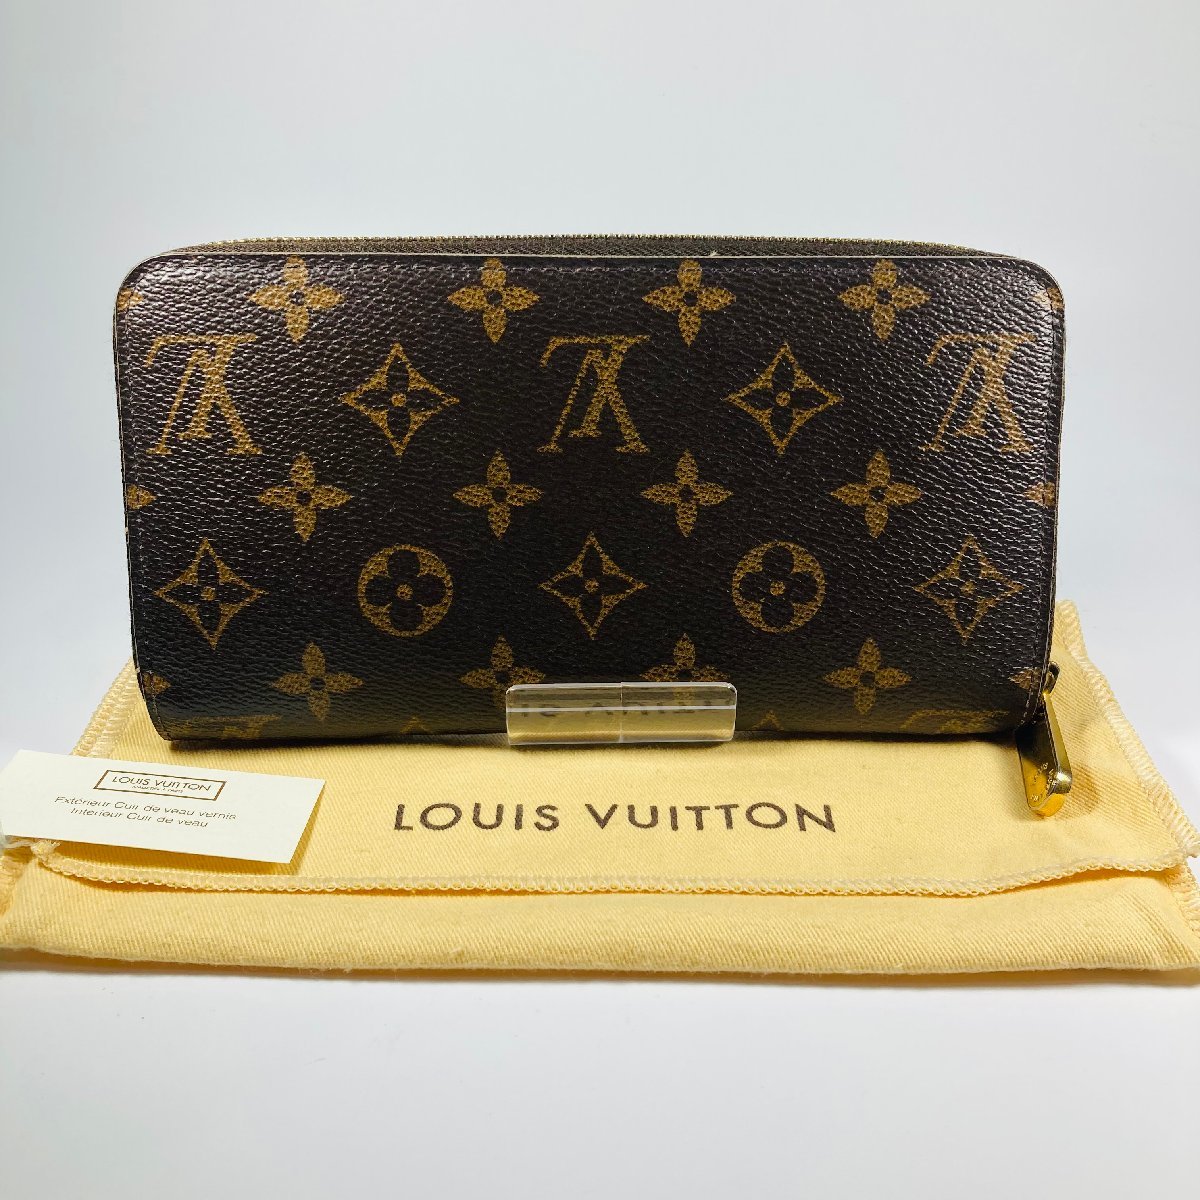 【76】中古品 Louis Vuitton ルイヴィトン モノグラム ジッピーウォレット ラウンドファスナー M60017 ブランド 長財布 財布 箱・保存袋付_画像2